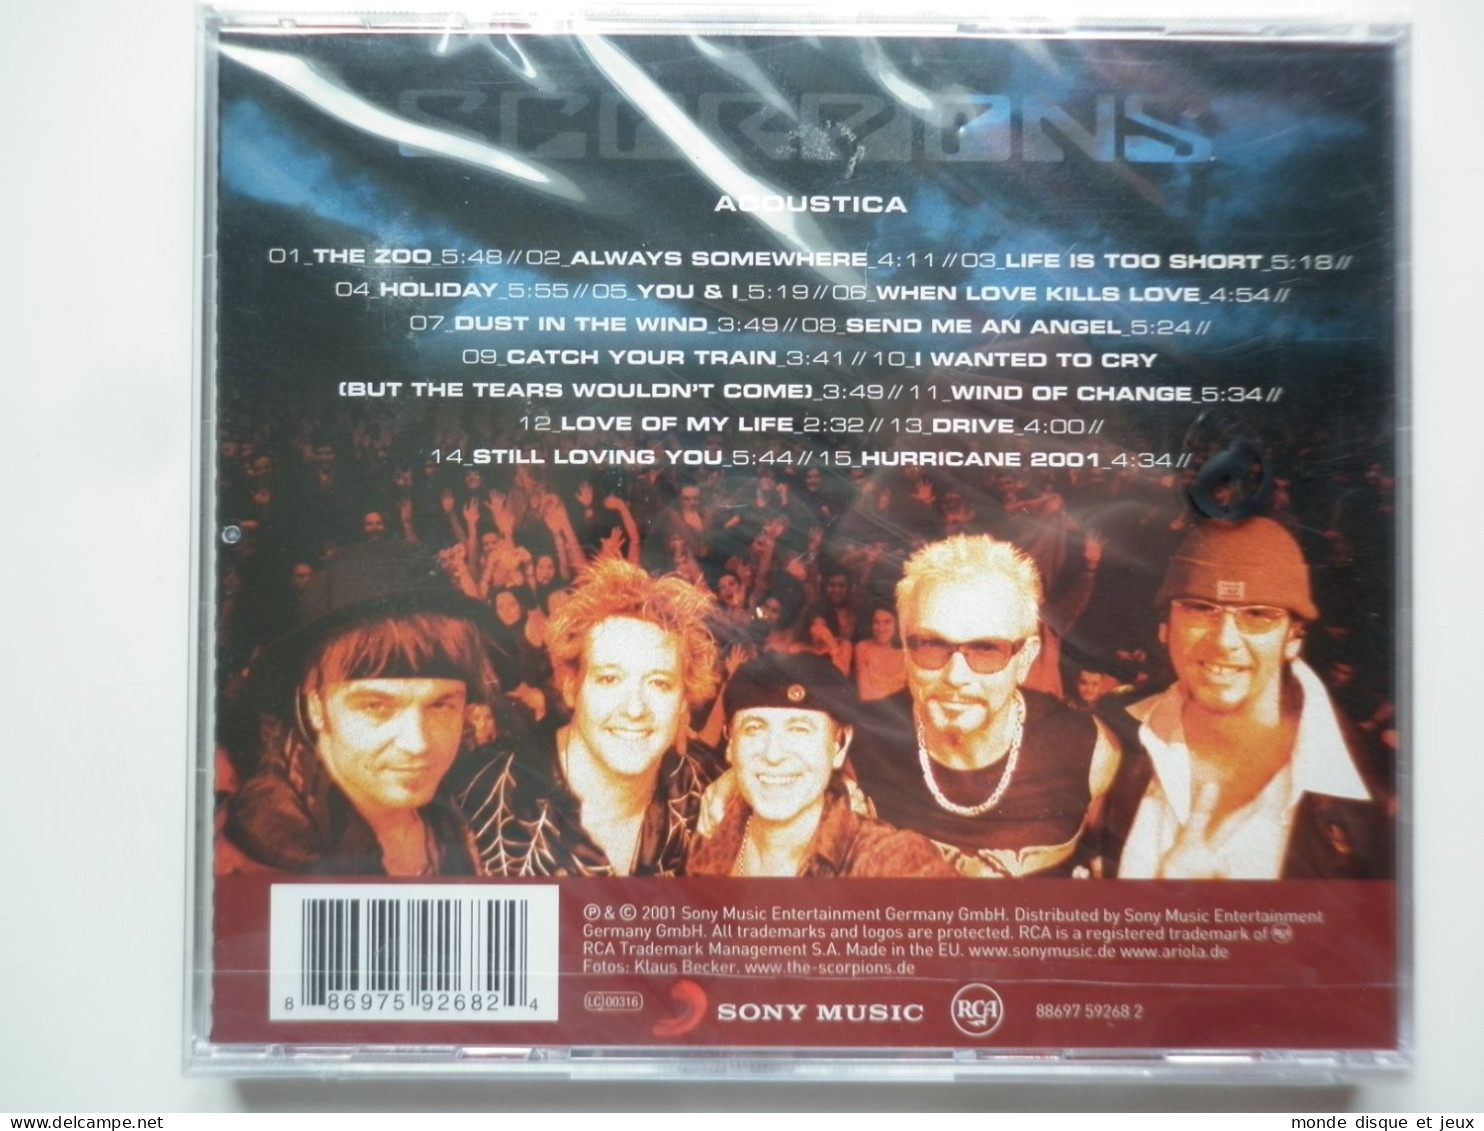 Scorpions Cd Album Acoustica - Andere - Franstalig